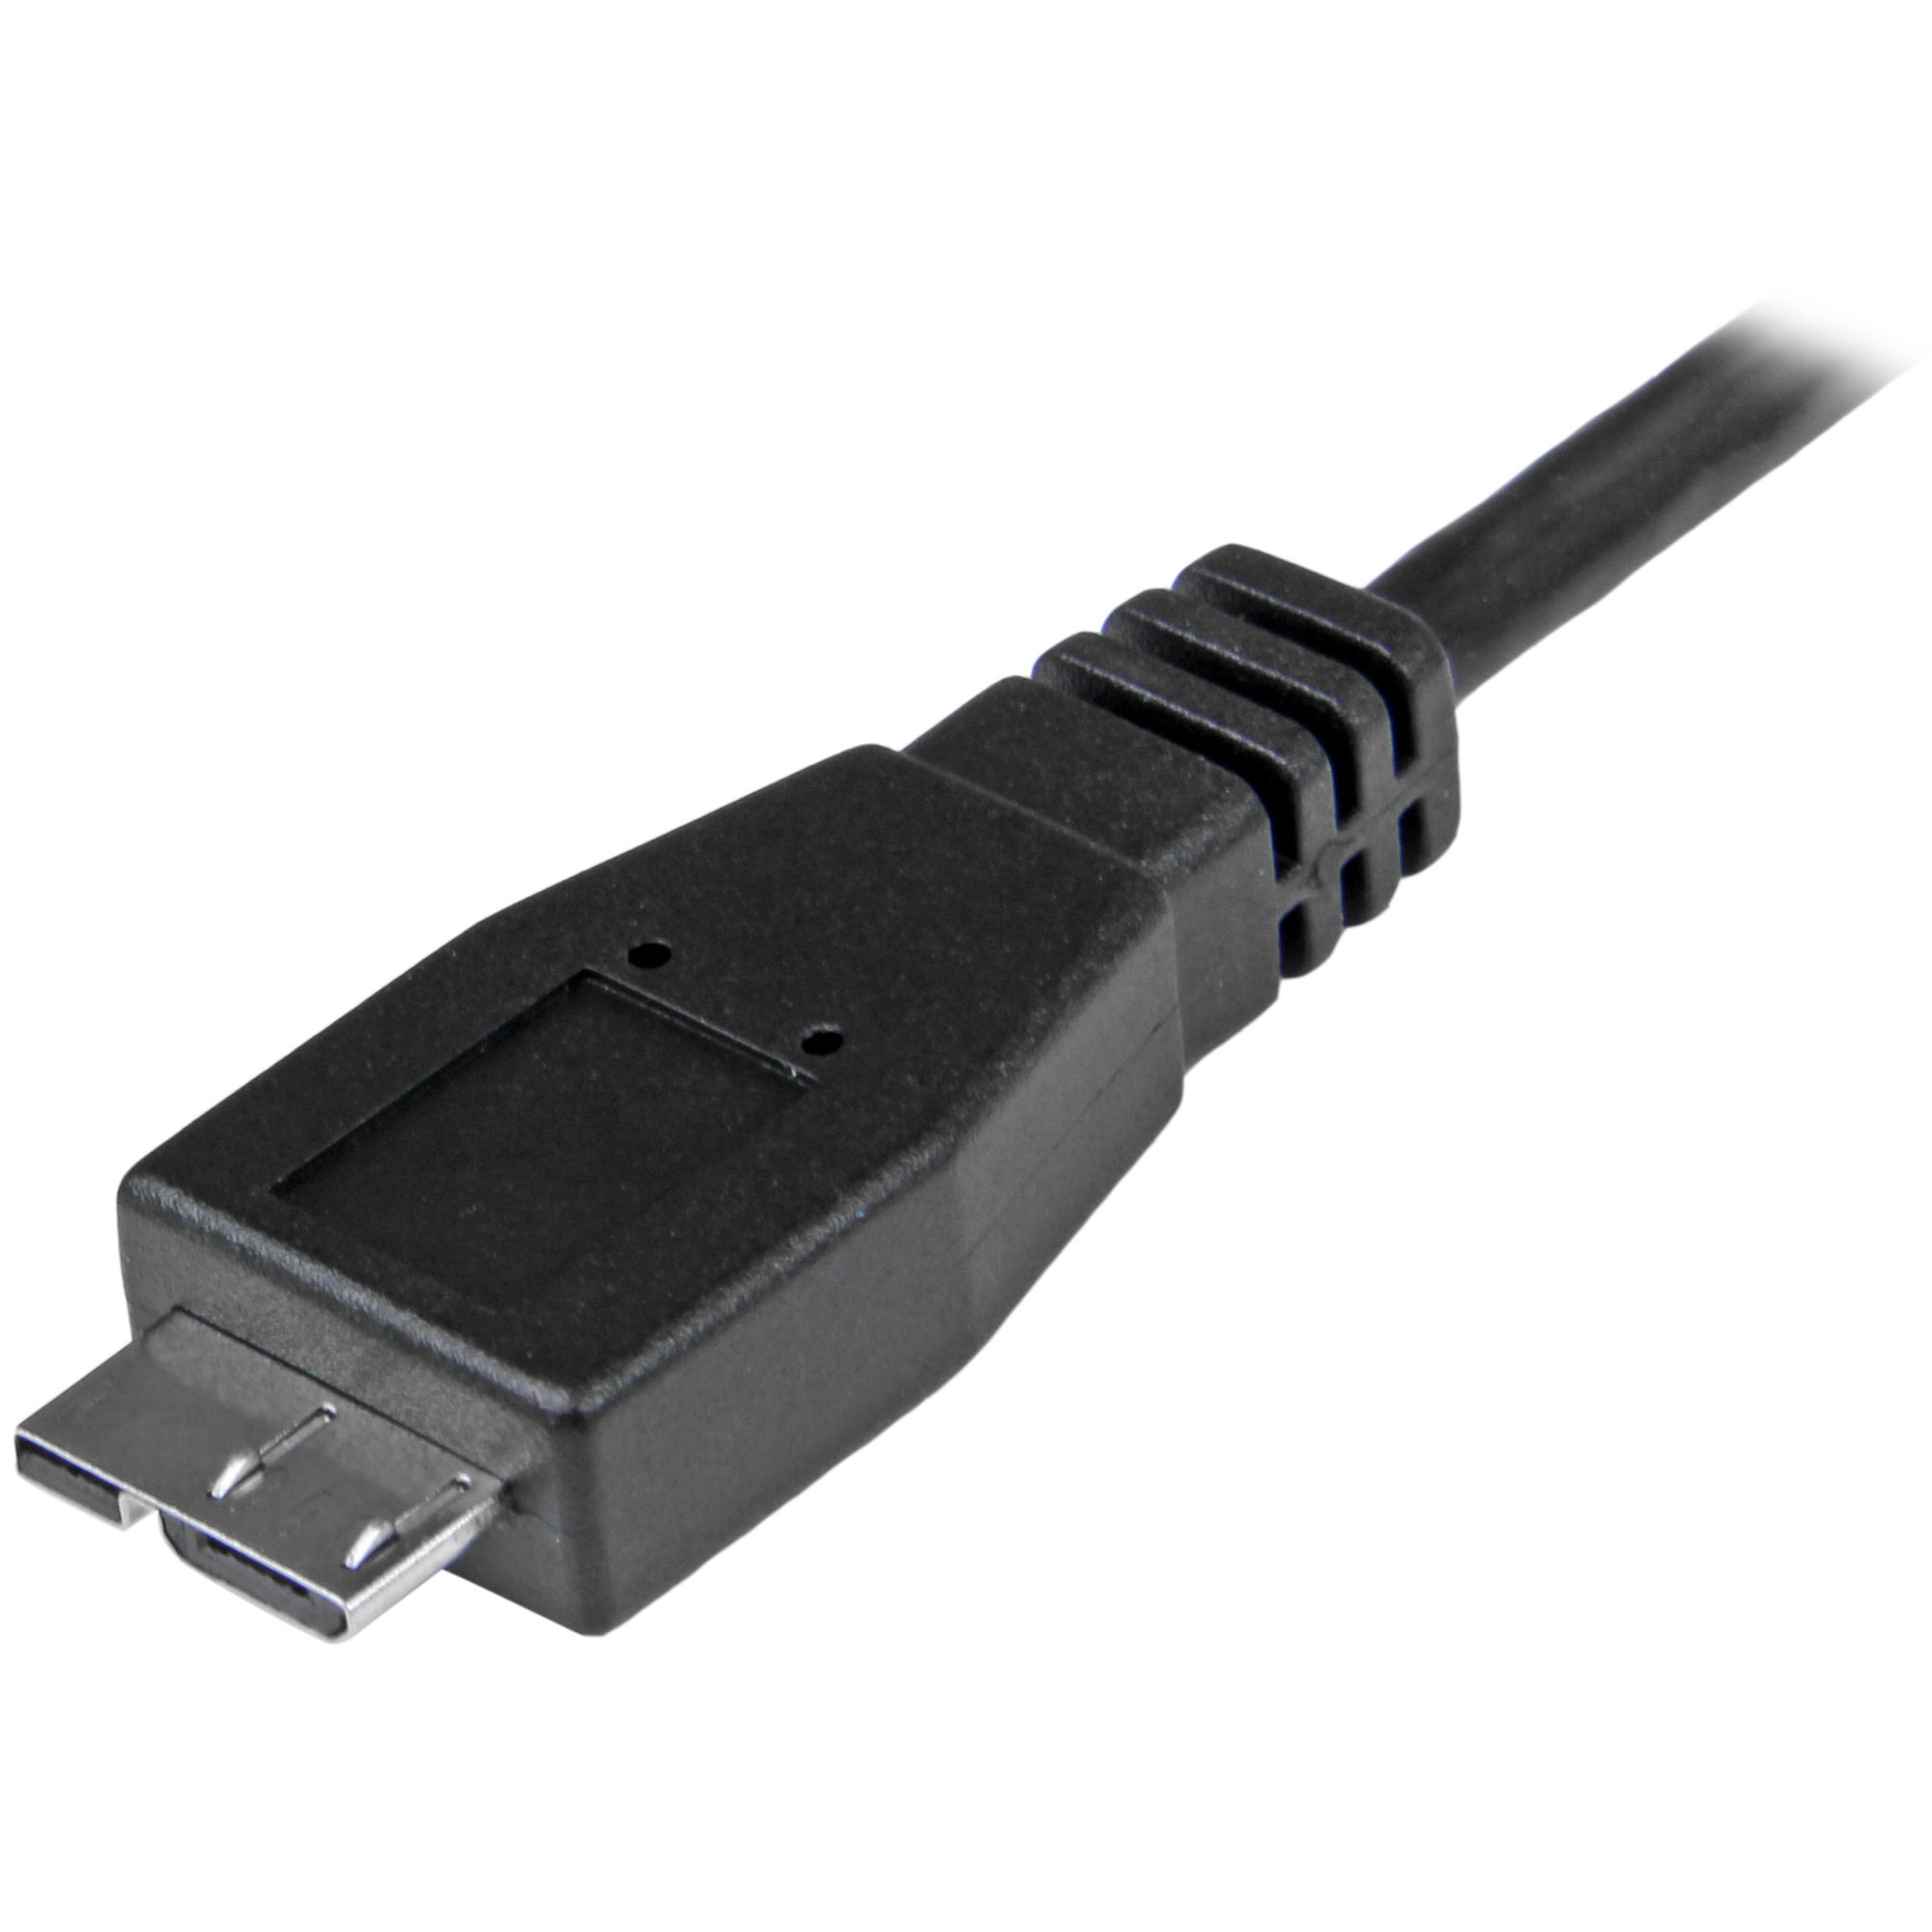 een vuurtje stoken Schouderophalend maat USB-C to Mirco USB Cable 1m USB 3.1 - USB-C Cables | StarTech.com Spain